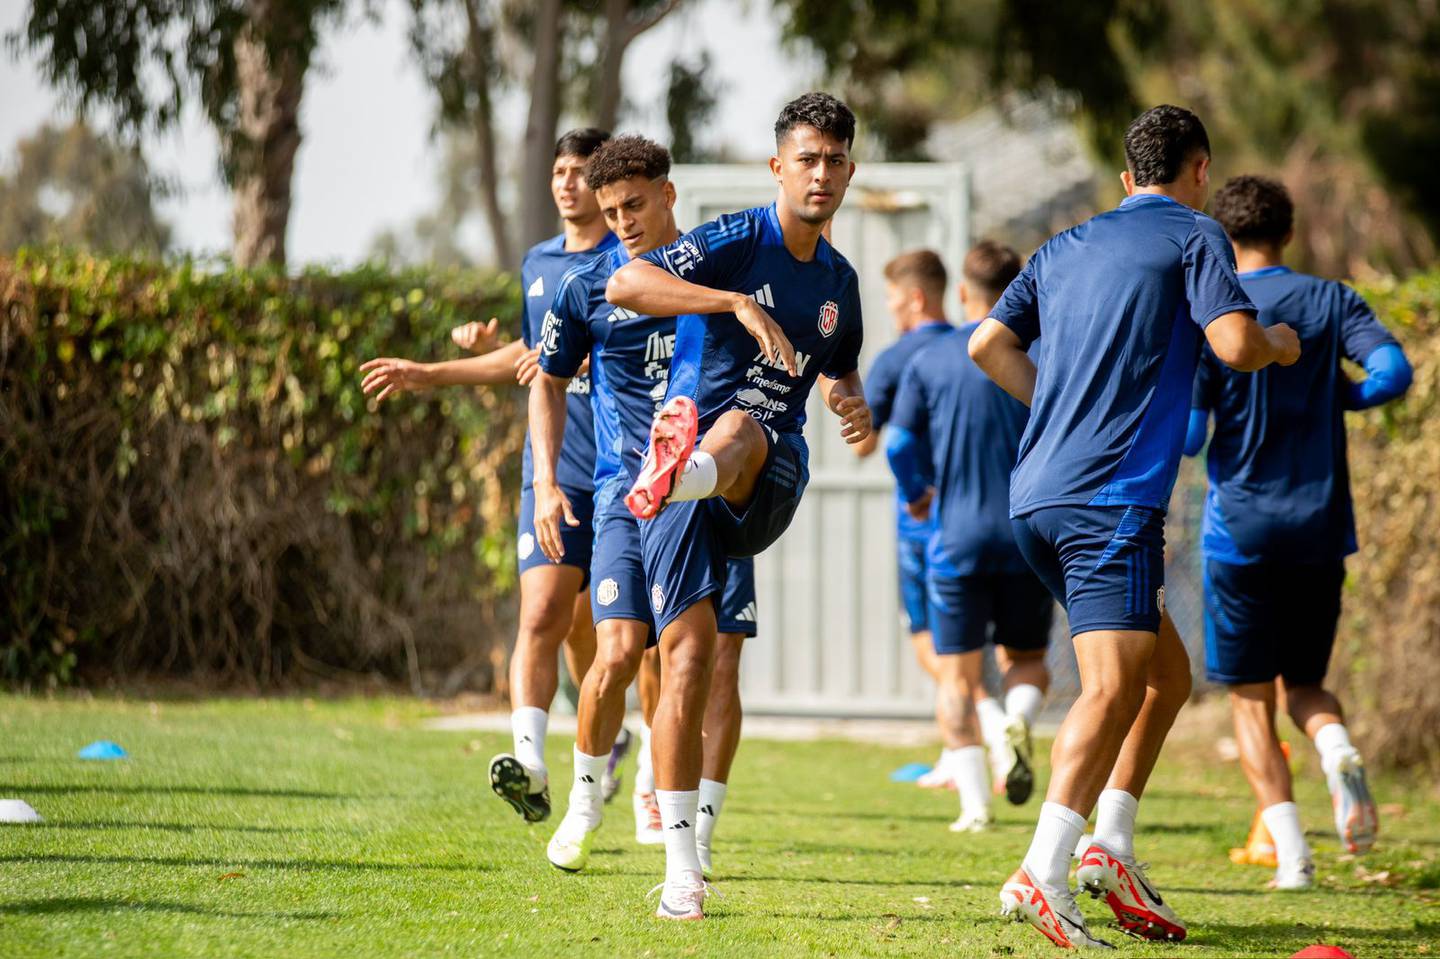 Álvaro Zamora es parte de la nueva camada de jugadores en la Selección de Costa Rica. Zamora, con 22 años, es mundialista y legionario, por lo que se espera mucho de él en la Copa América.